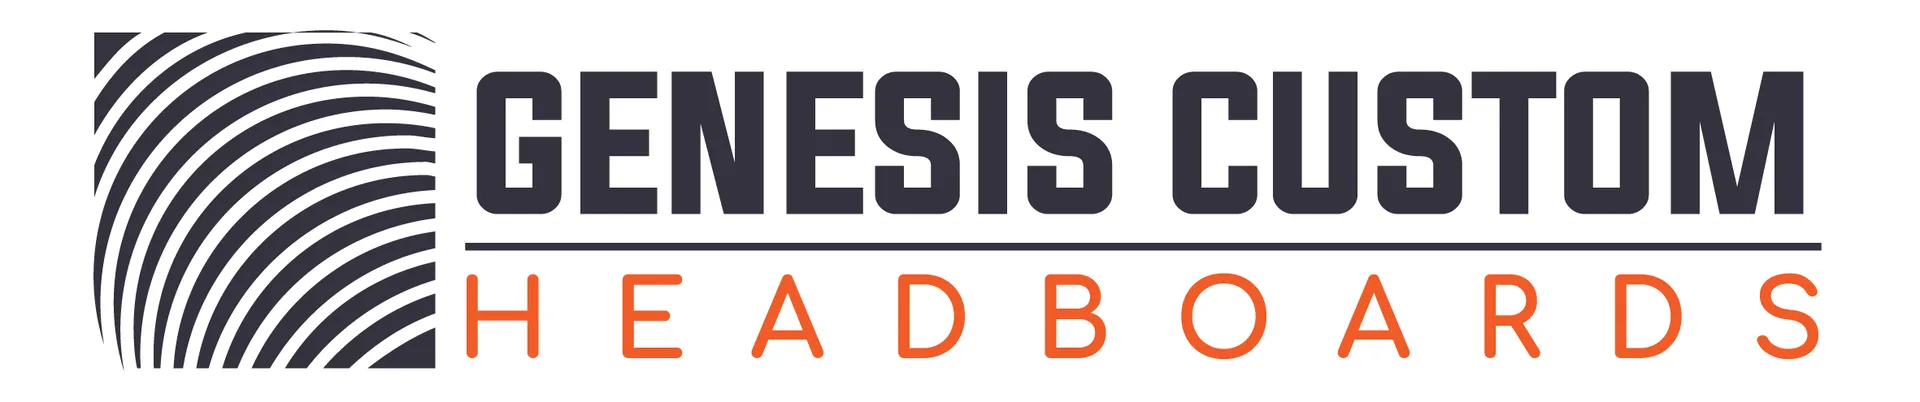 Genesis Custom Headboards